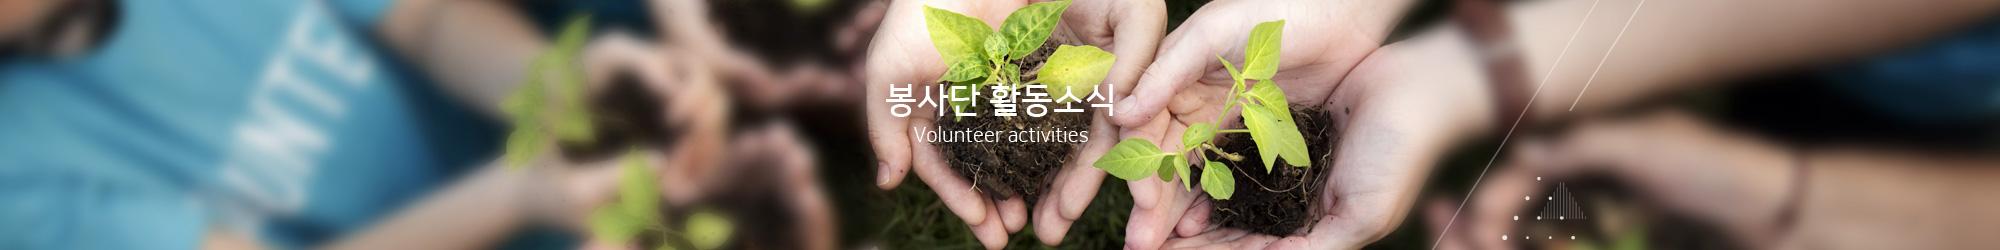 봉사단 활동소식 Volunteer activities